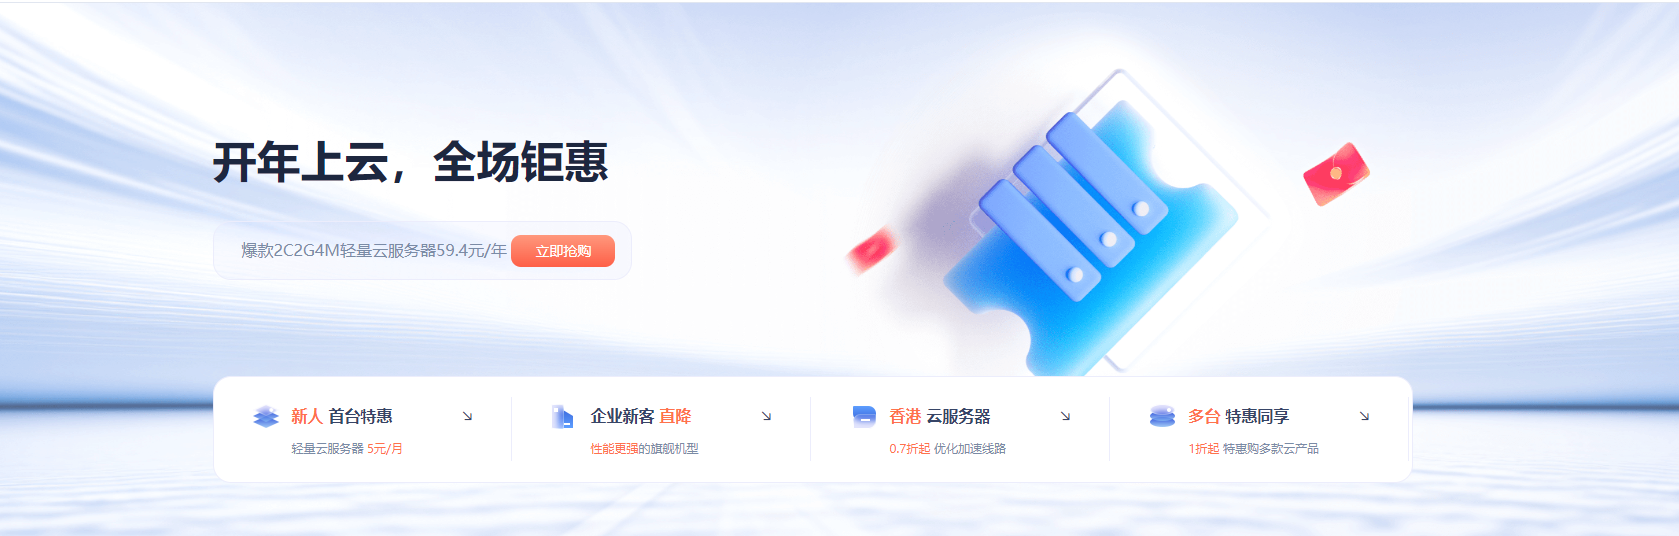 UCloud开年上云钜惠 2C2G轻量云服务器59.4元/年